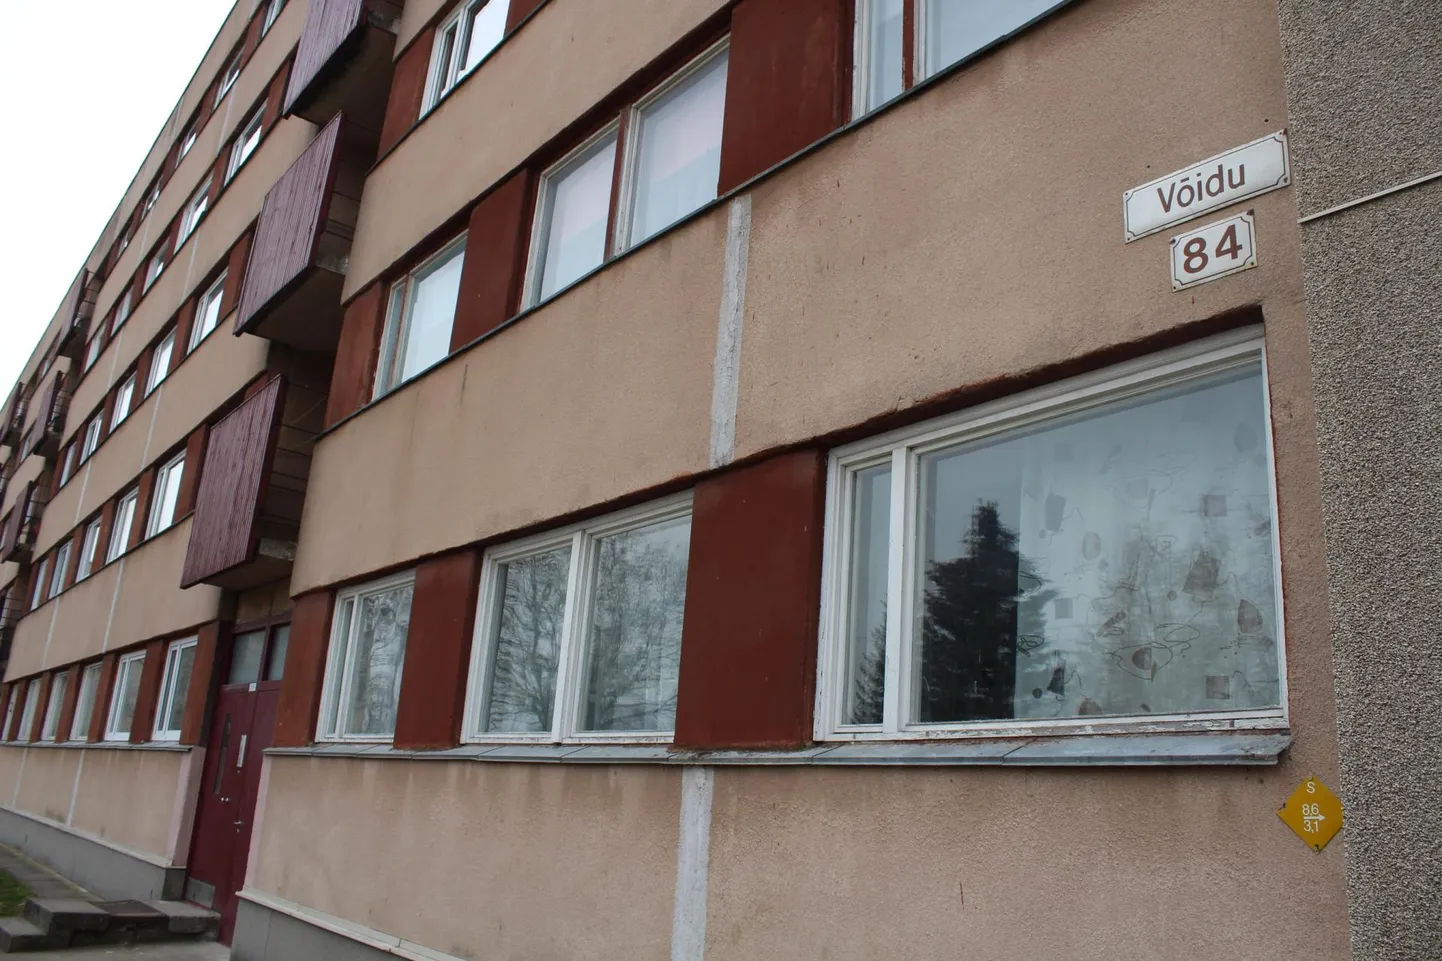 Võidu tänav 84 korteriühistu Rakvere linnas on üks KredExi renoveerimistoetuse taotlejatest.